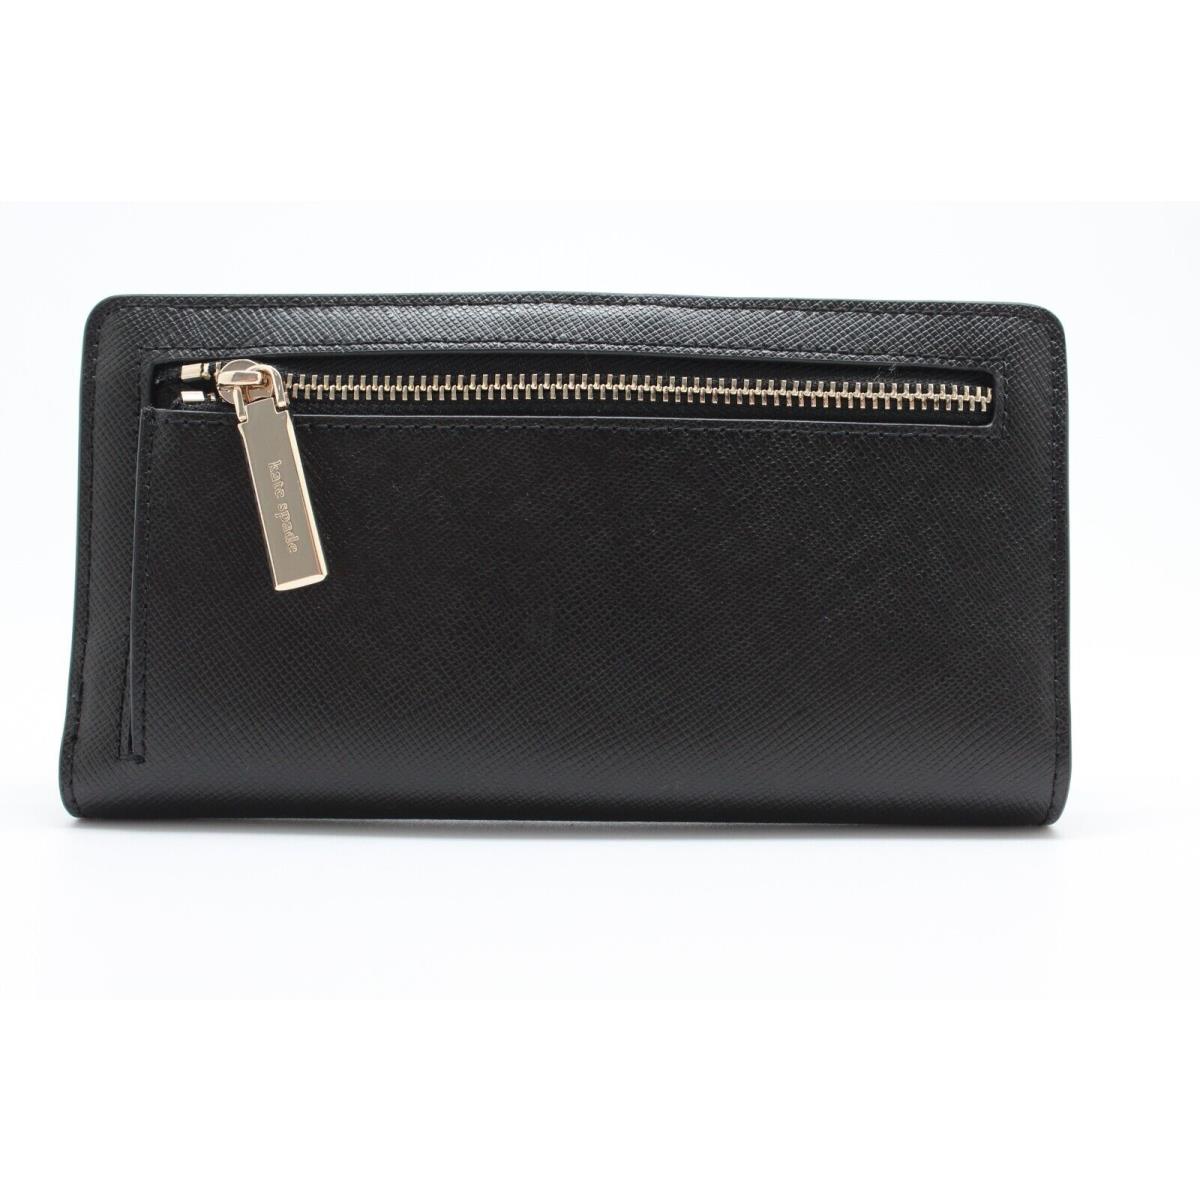 Kate Spade New York Staci Large Slim Bifold Wallet Black